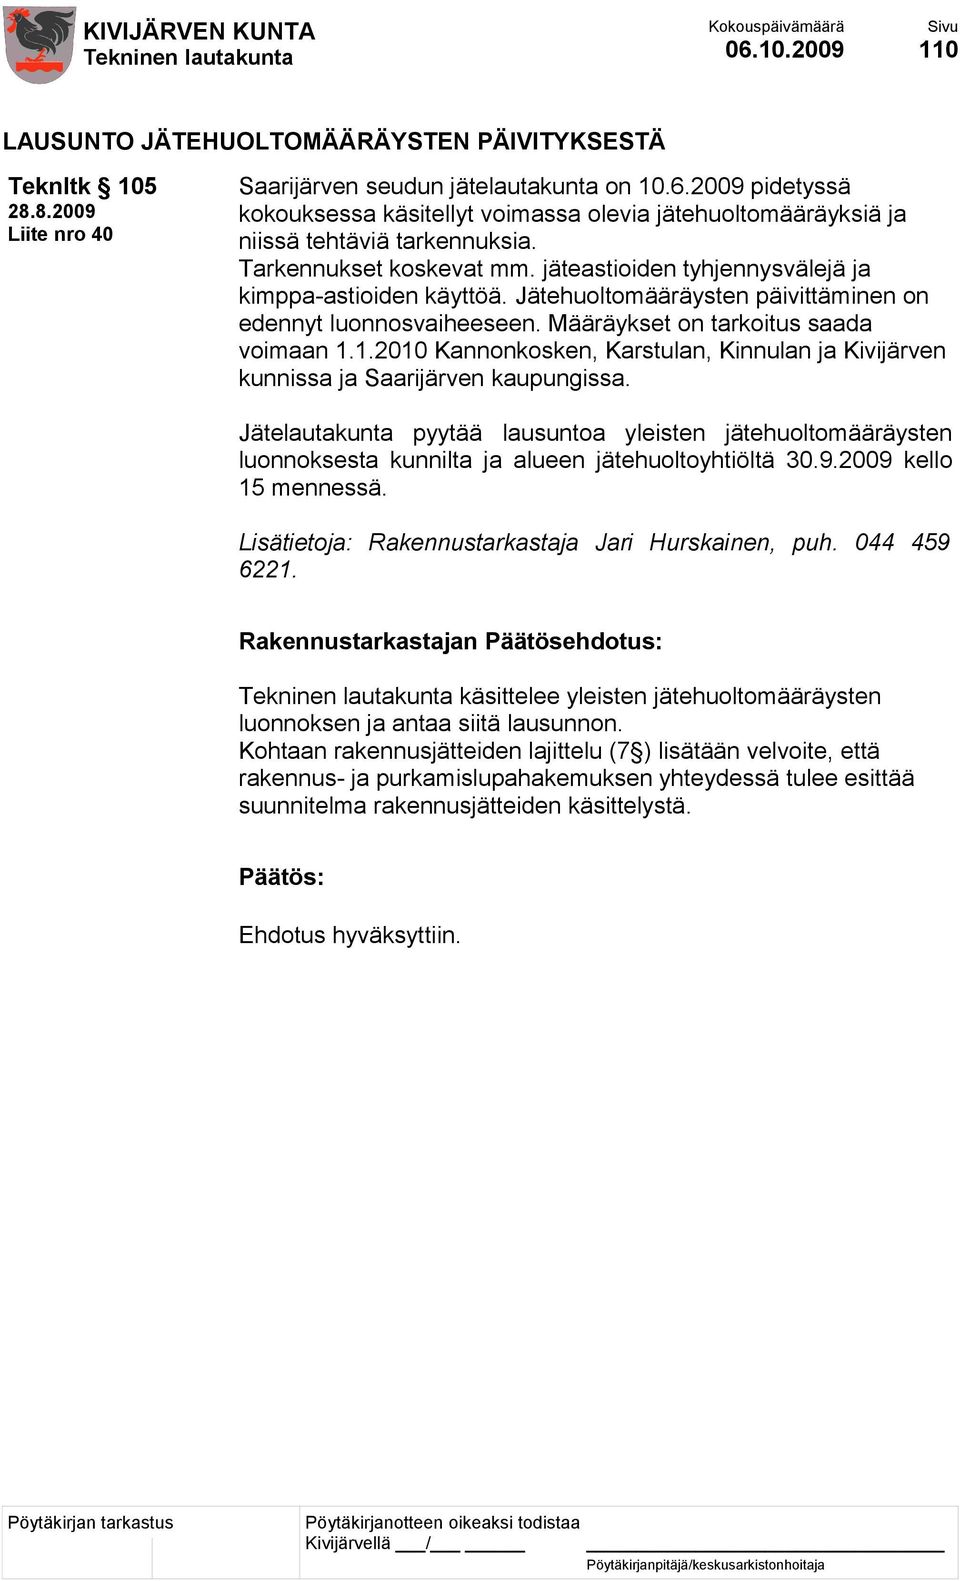 Jätehuoltomääräysten päivittäminen on edennyt luonnosvaiheeseen. Määräykset on tarkoitus saada voimaan 1.1.2010 Kannonkosken, Karstulan, Kinnulan ja Kivijärven kunnissa ja Saarijärven kaupungissa.